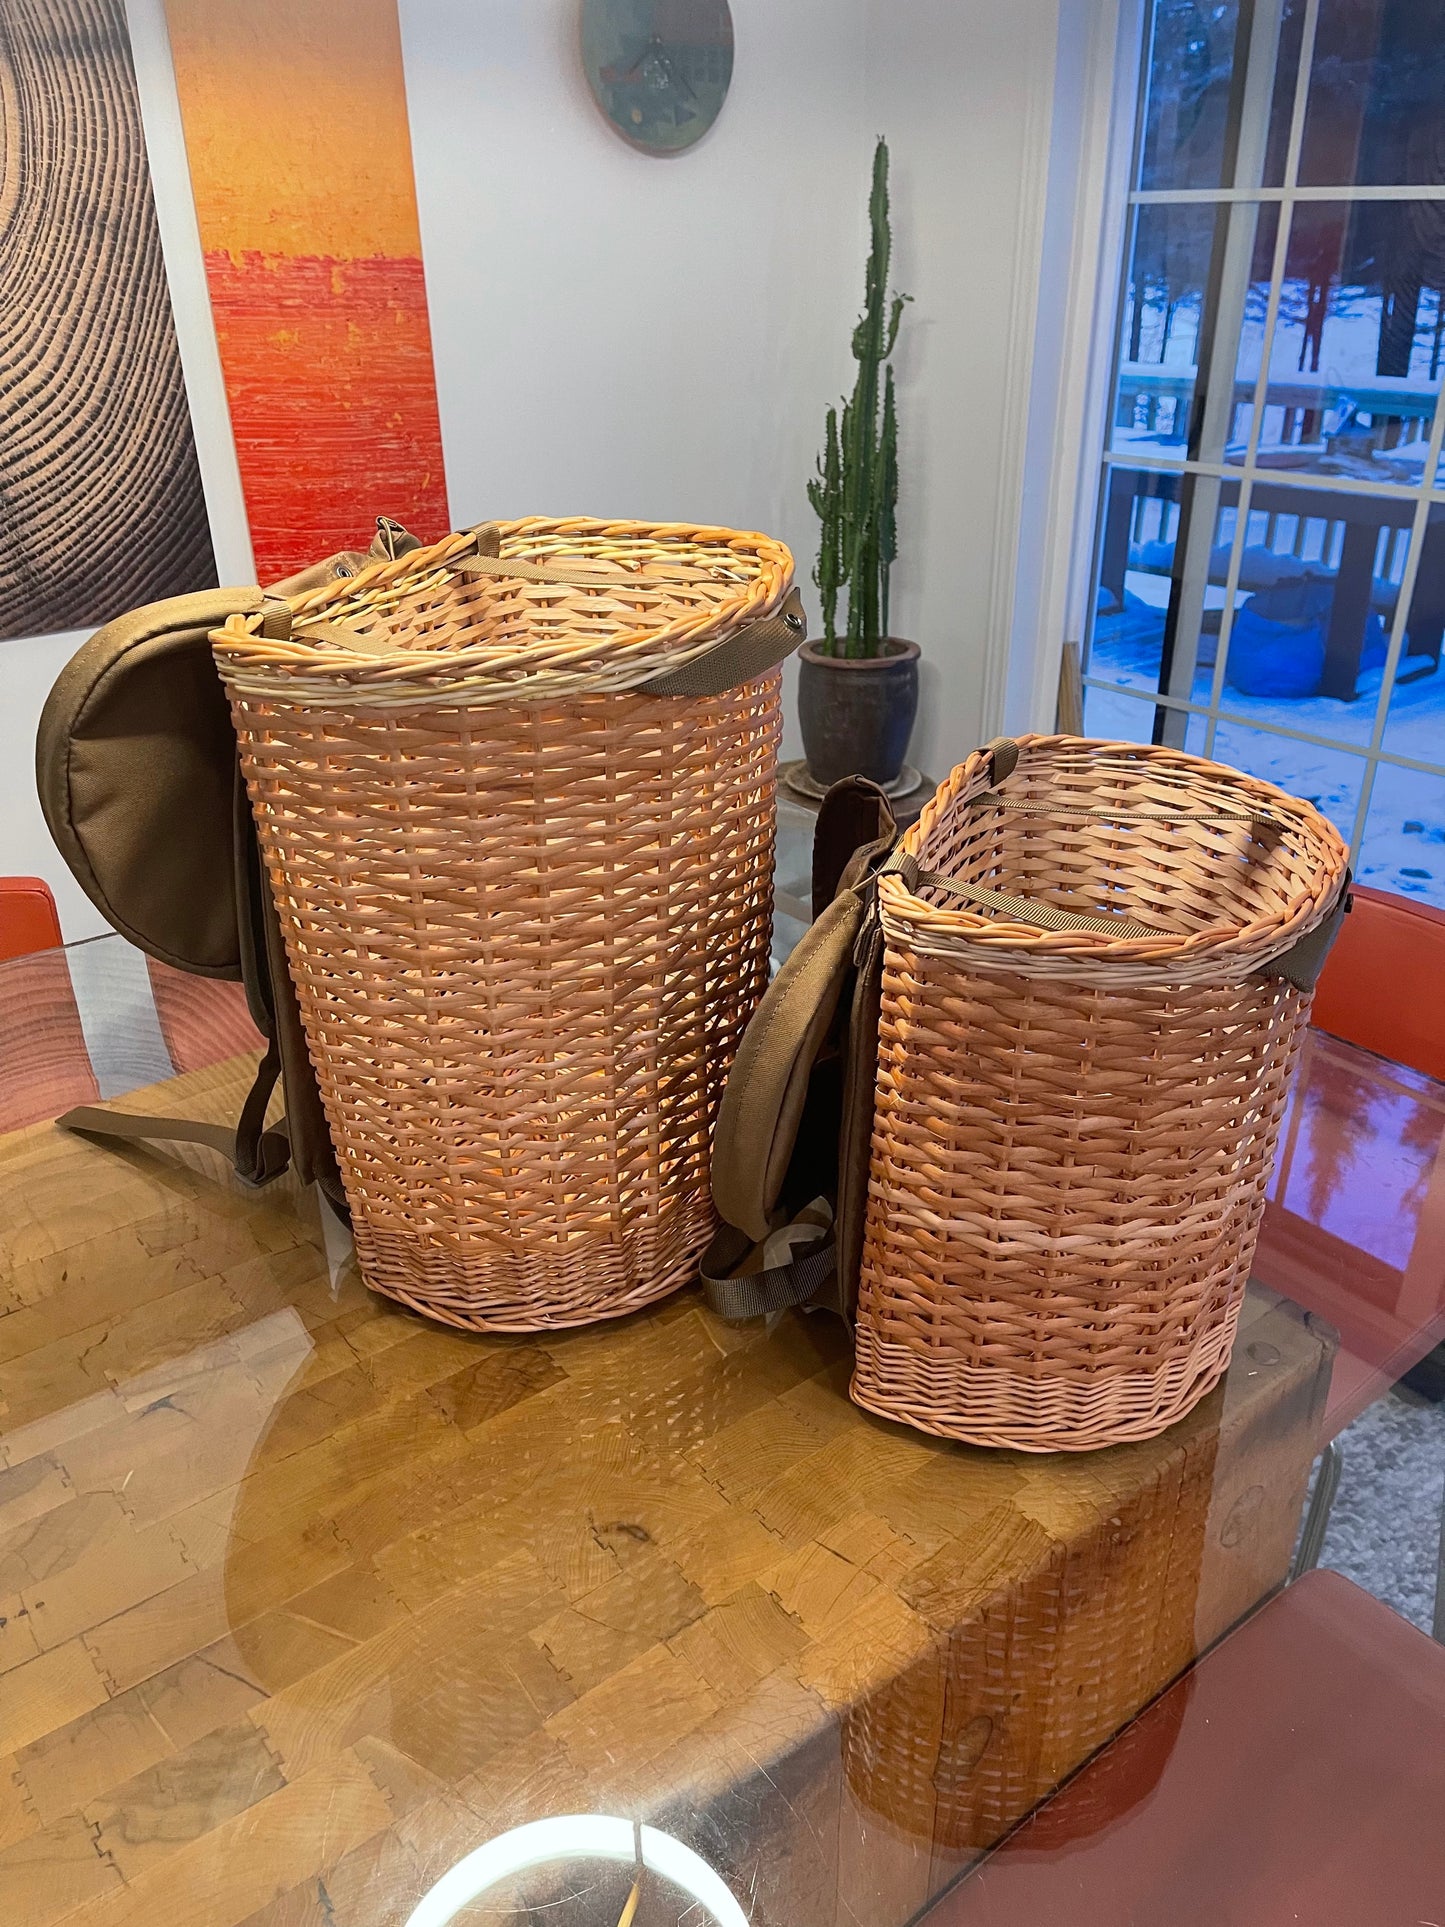 Foraging Basket/Backpack Conversion